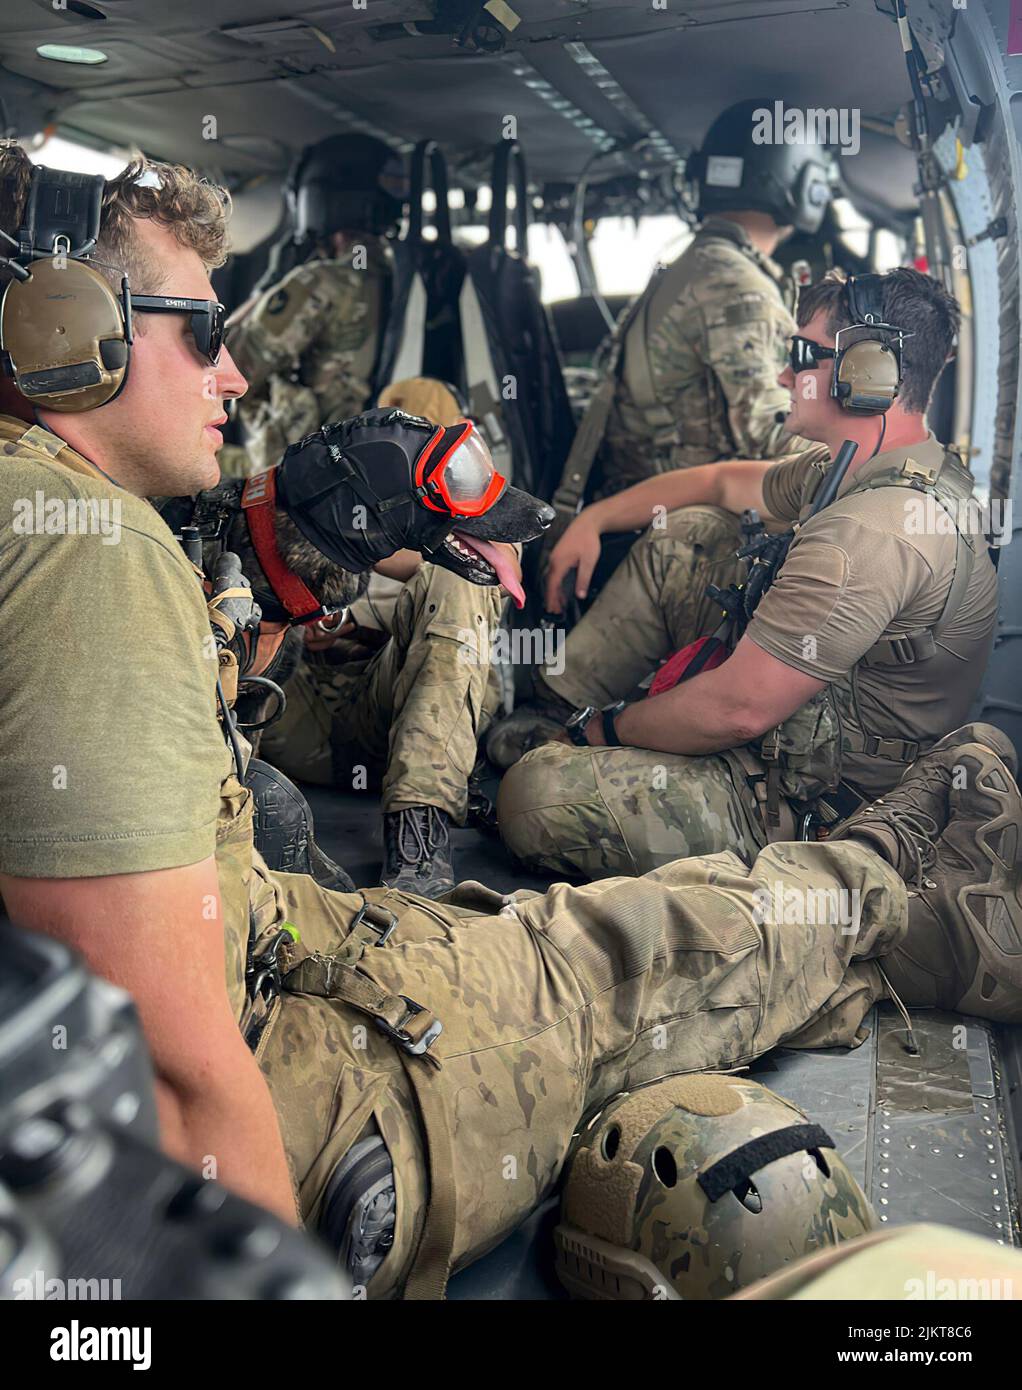 Una tripulación de vuelo de la Guardia Nacional de Kentucky de 2/147th Bravo Co. Ayudó en esfuerzos de alivio de inundaciones en respuesta a un estado de emergencia declarado en el este de Kentucky el 29 de julio de 2022. Su misión consiste en apoyar el movimiento de Soldados, el transporte de apoyo conjunto, la entrega de suministros de emergencia, y la inspección de áreas inundadas en busca de sobrevivientes de Kentucky. (EE. UU Foto de la Guardia Nacional del Ejército por Sgt. Jesse Elbouab) Foto de stock